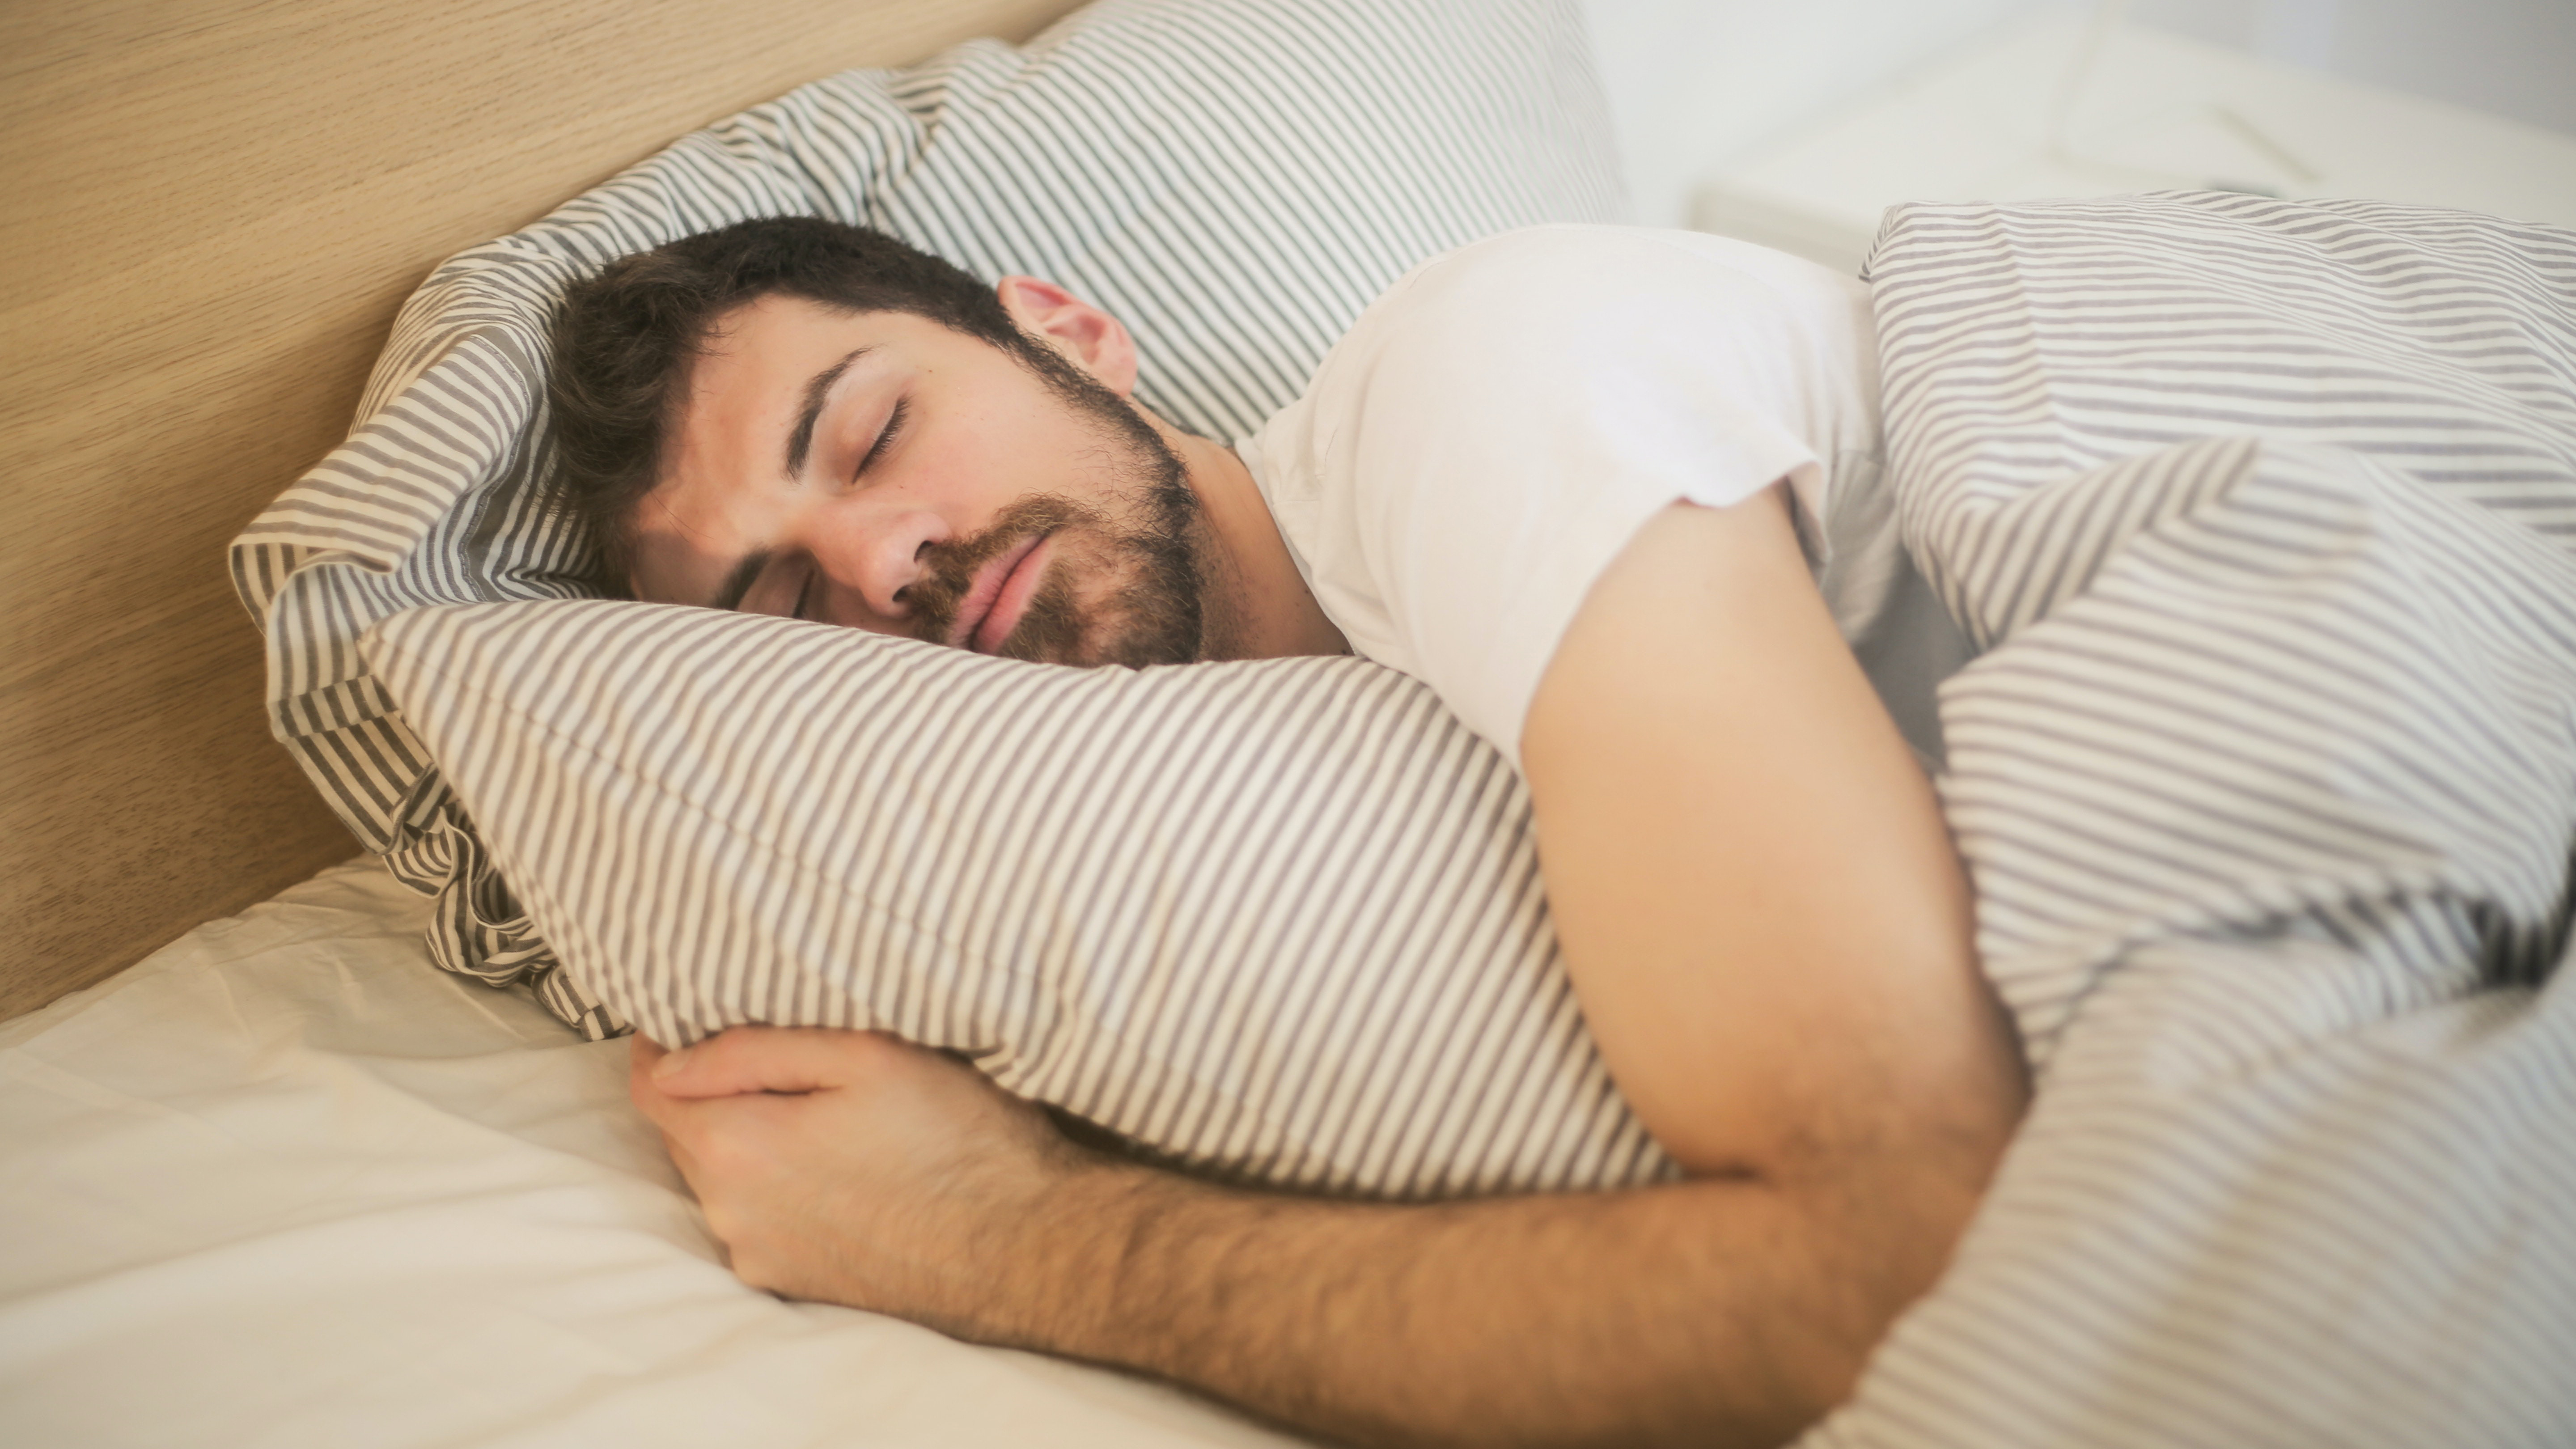 Según el nuevo estudio, unas 7 horas de sueño es el descanso nocturno ideal para las personas a partir de la mediana edad (Foto: Pexels)